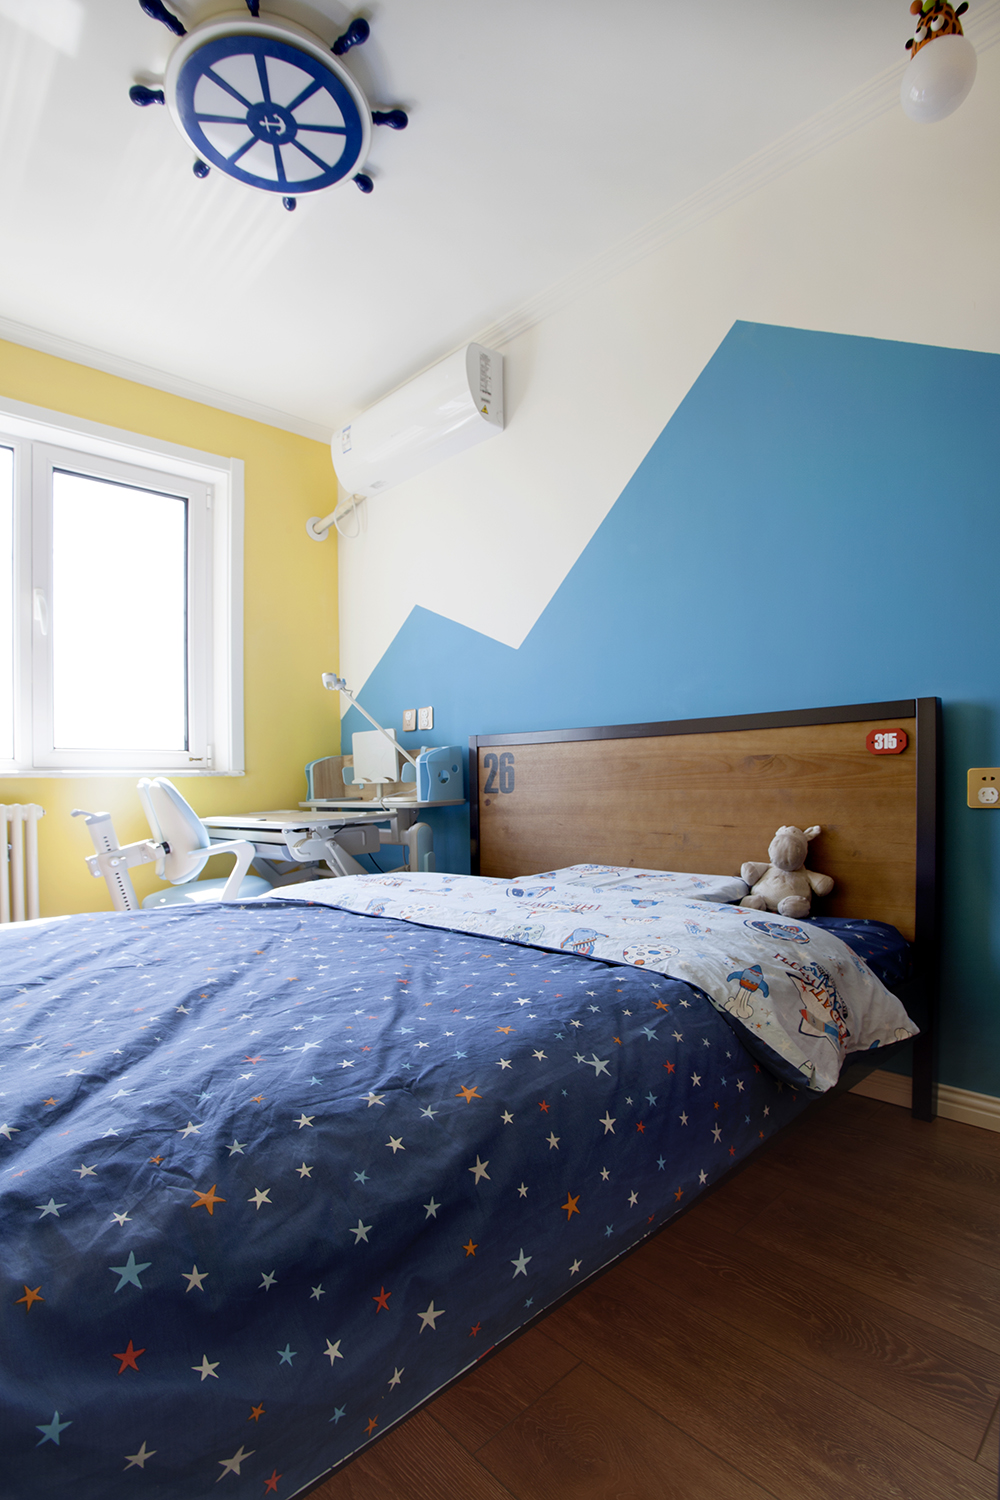 侧卧以活跃跳动的蓝白色作为房间的主色调，黄色的融合打破了空间的平淡乏味。